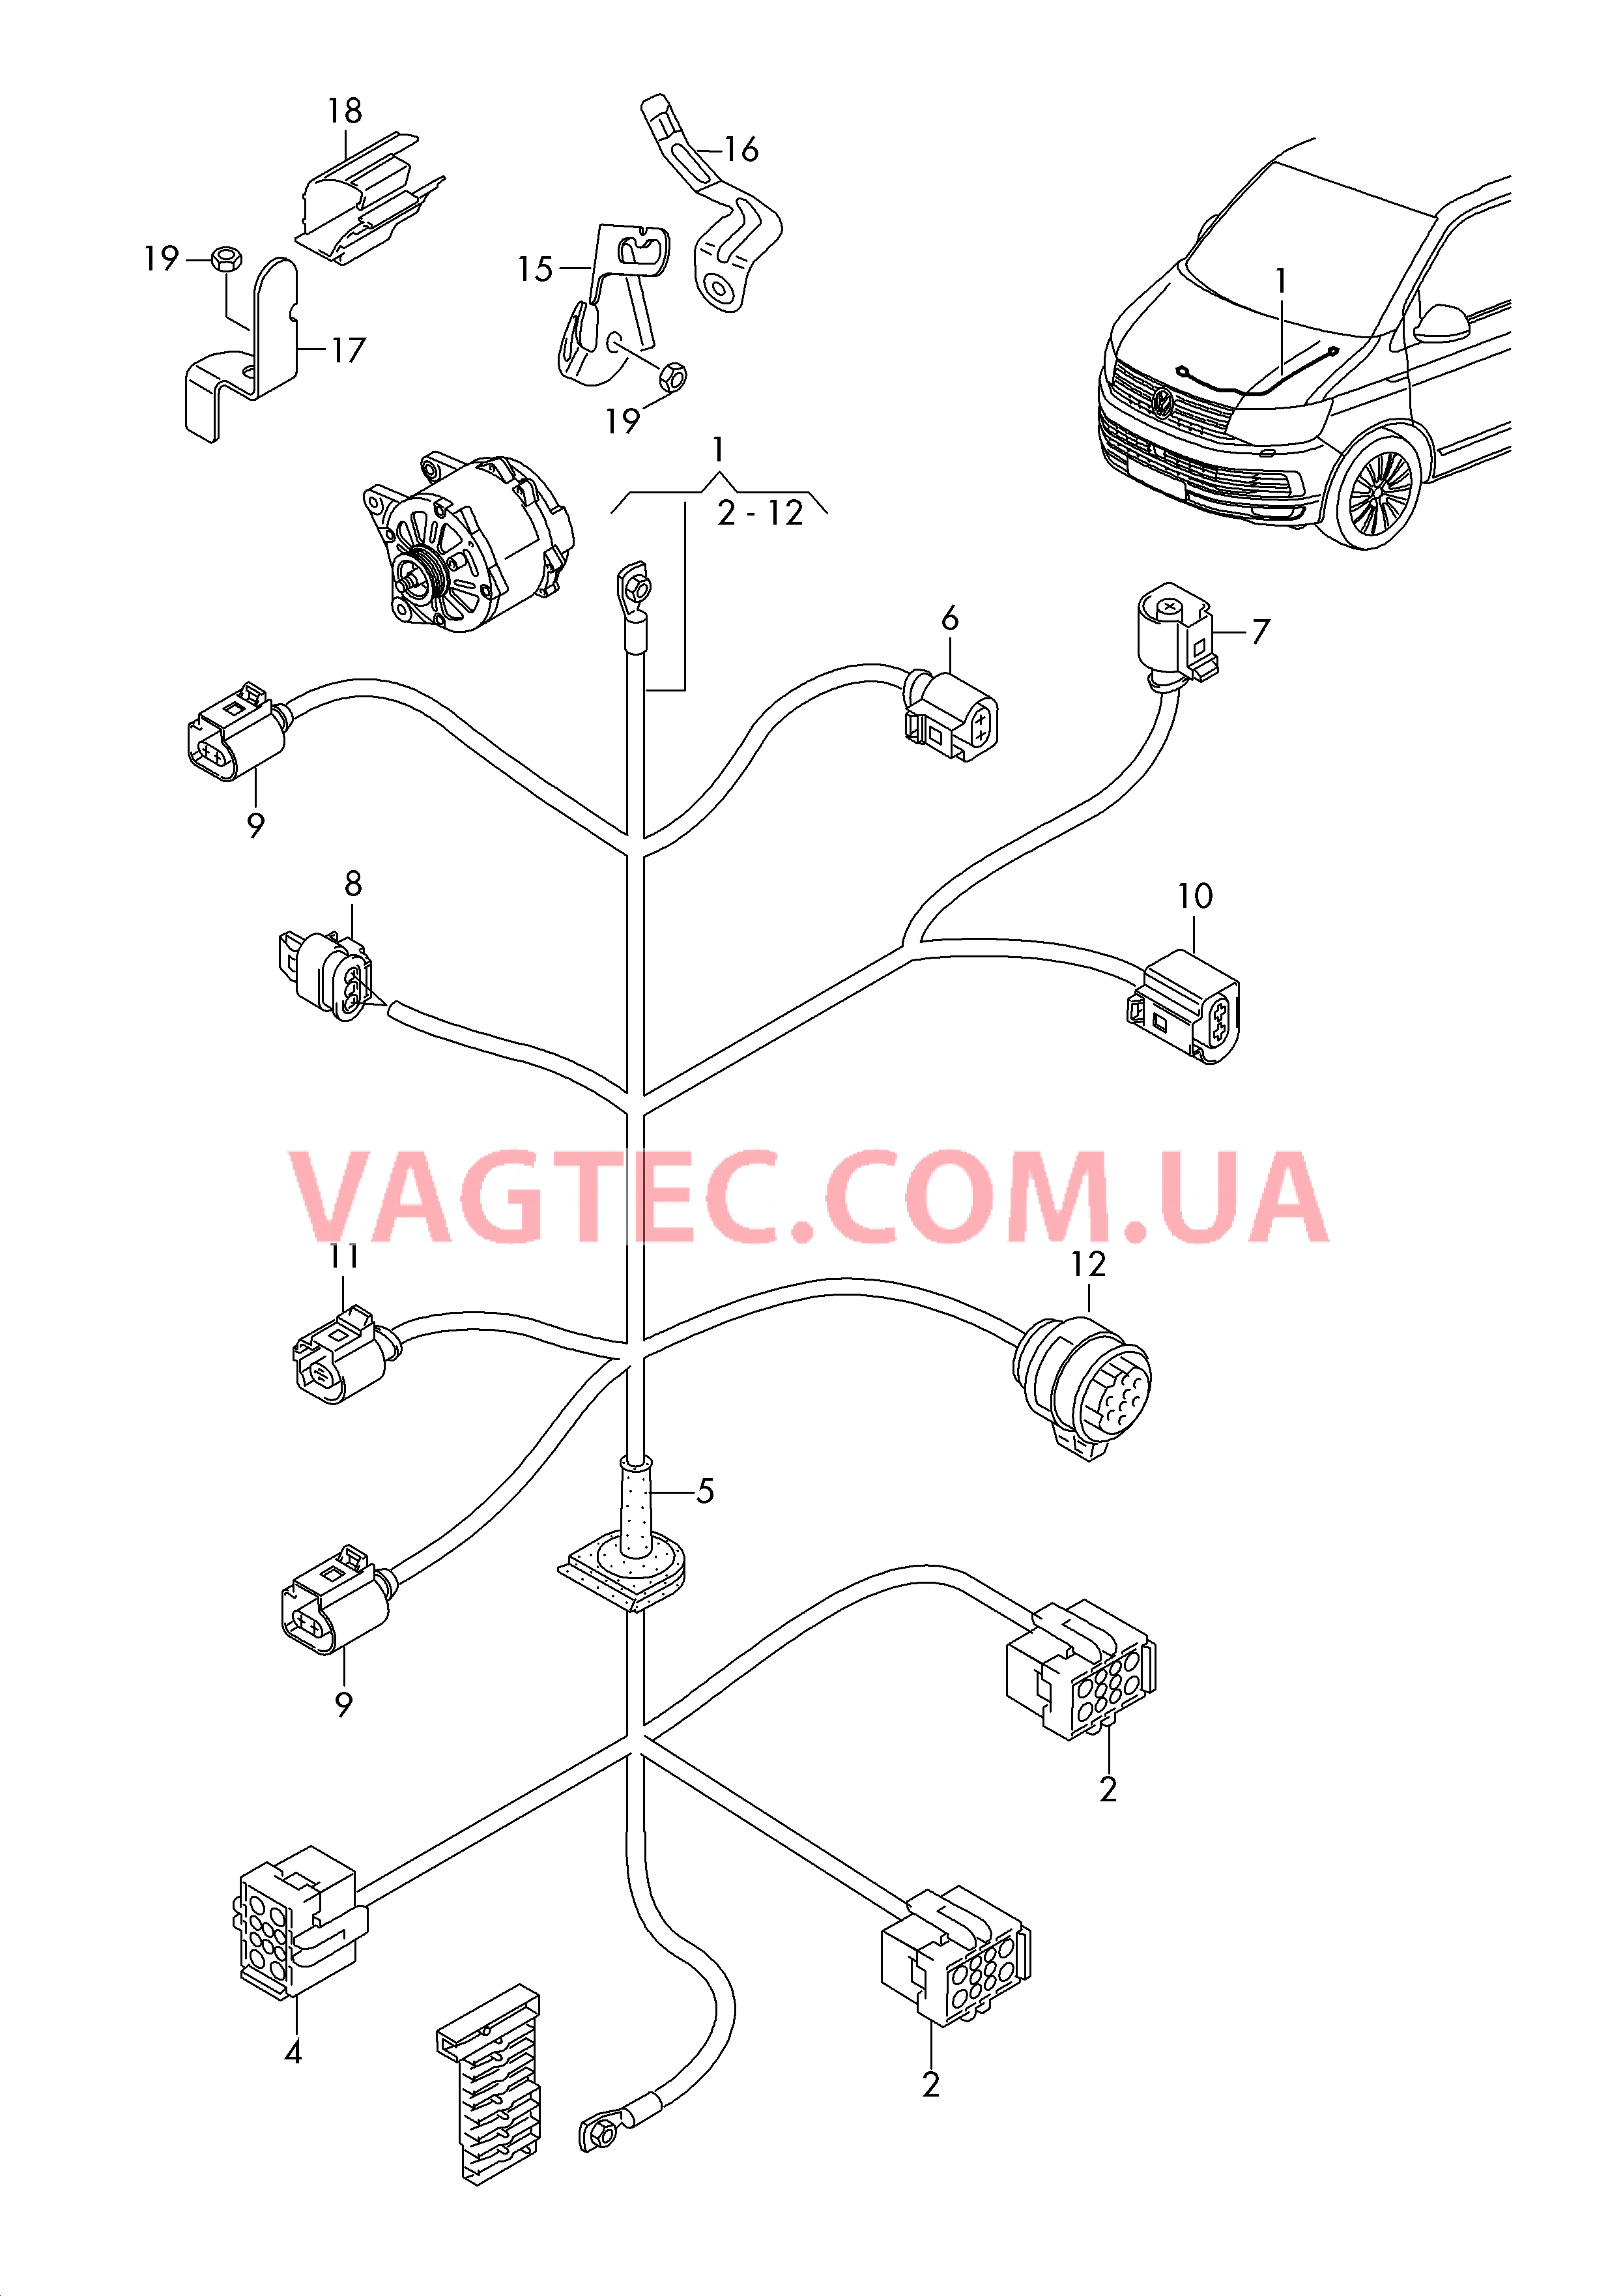 Жгут проводов для двигателя Генератор  для VOLKSWAGEN Transporter 2016-1